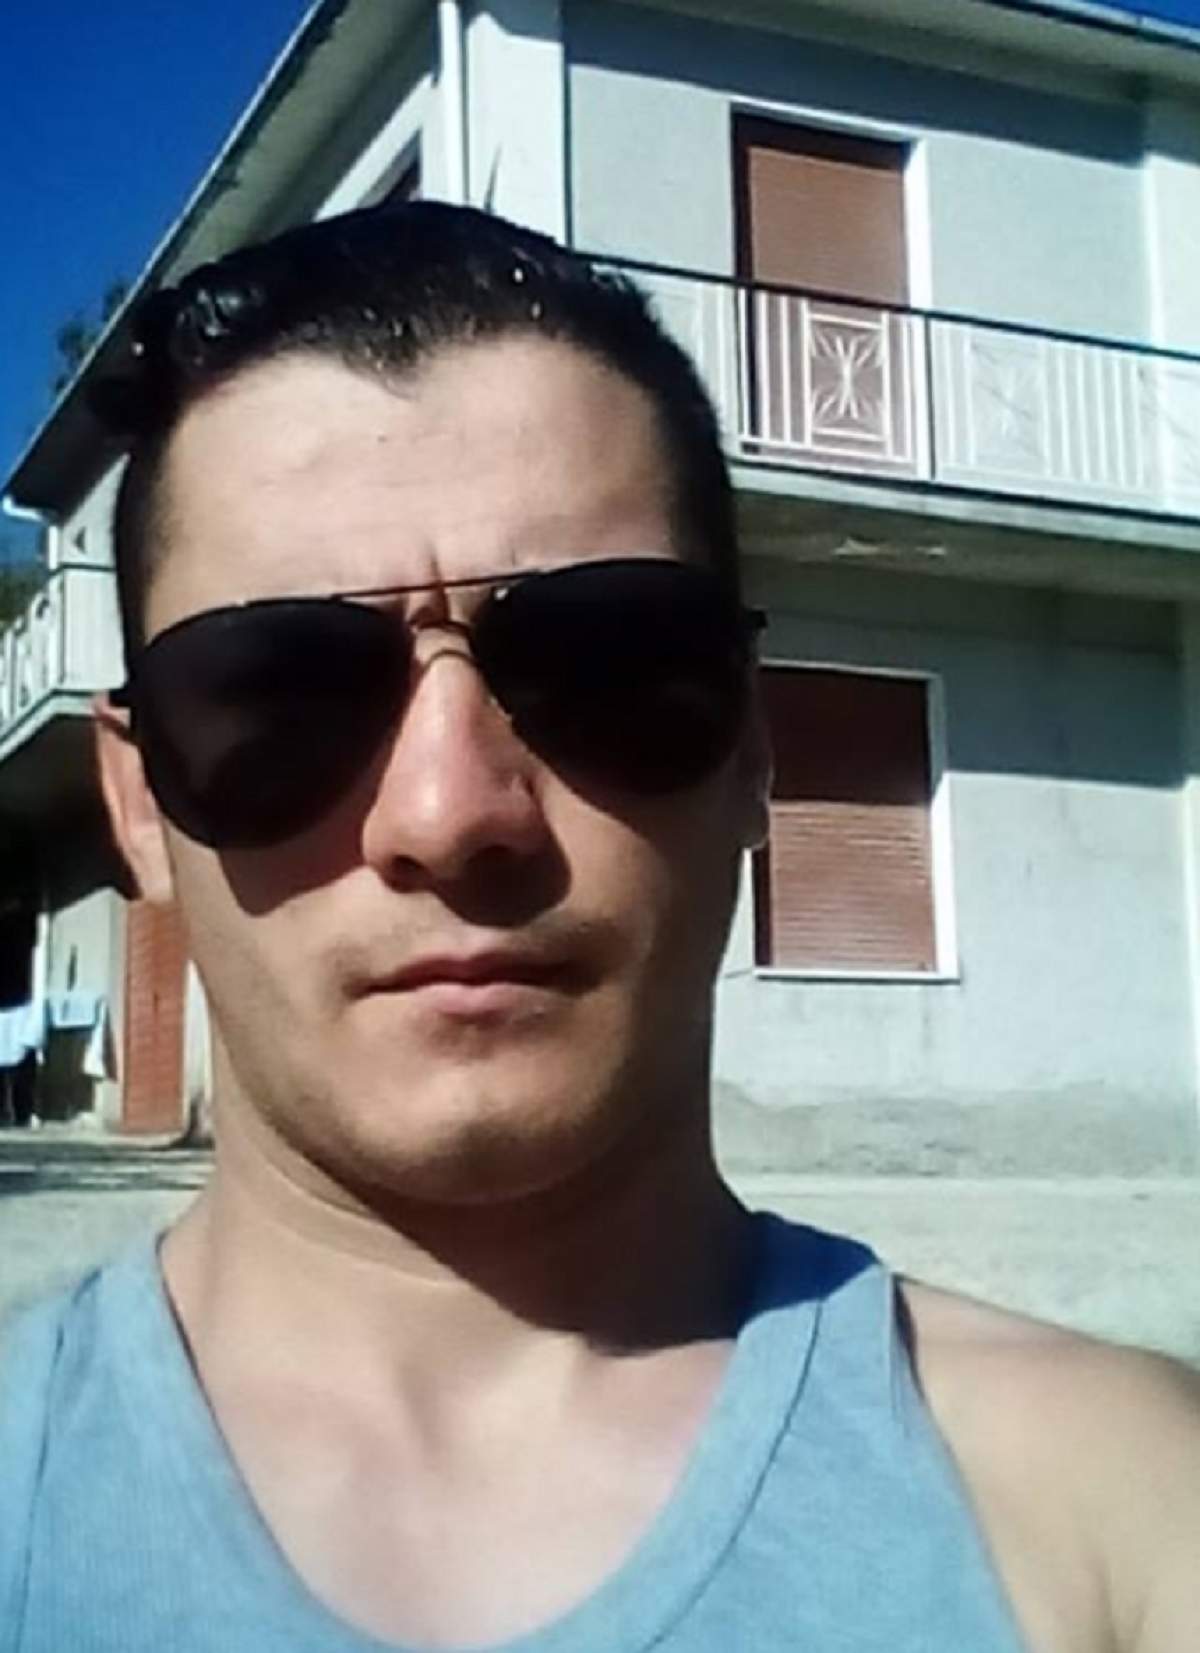 Român în vârstă de 25 de ani, găsit mort într-o casă din Italia! Ce au descoperit autorităţile